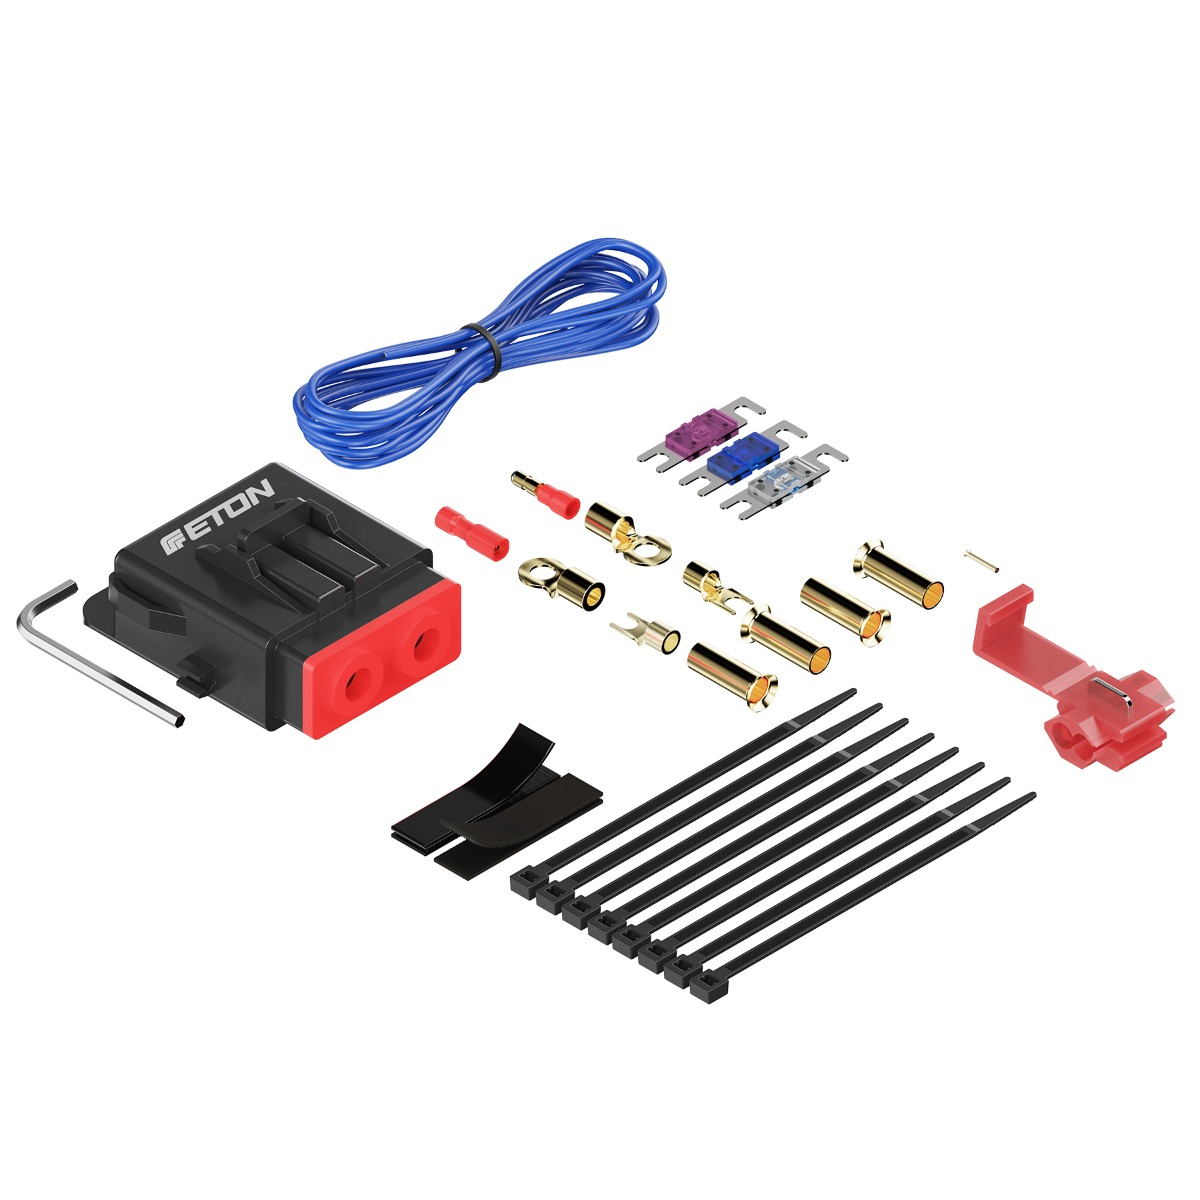 ETON PCC 20 Verstärker Anschlußset 20 mm² Power Connection Cable Set 20 mm2 Set zur Installation von Auto Verstärkern und Aktiv Subwoofern